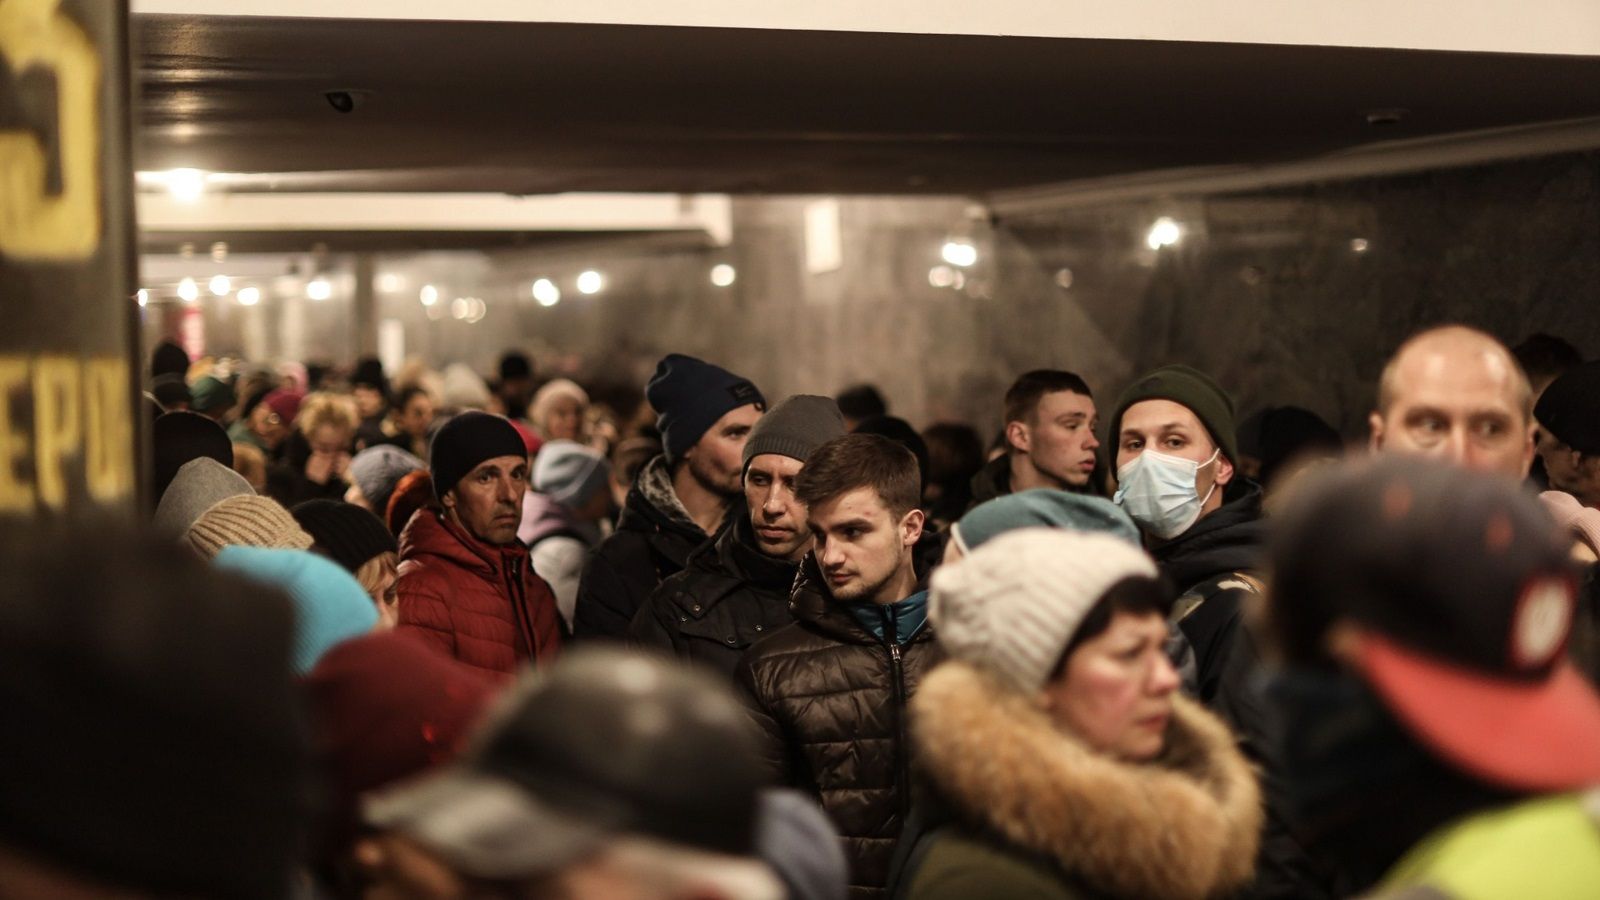 ウクライナ人脱出で欧州に再び｢難民危機｣の足音 受け入れ分担をめぐる意見衝突は避けられない | ウクライナ侵攻､危機の本質 | 東洋経済オンライン